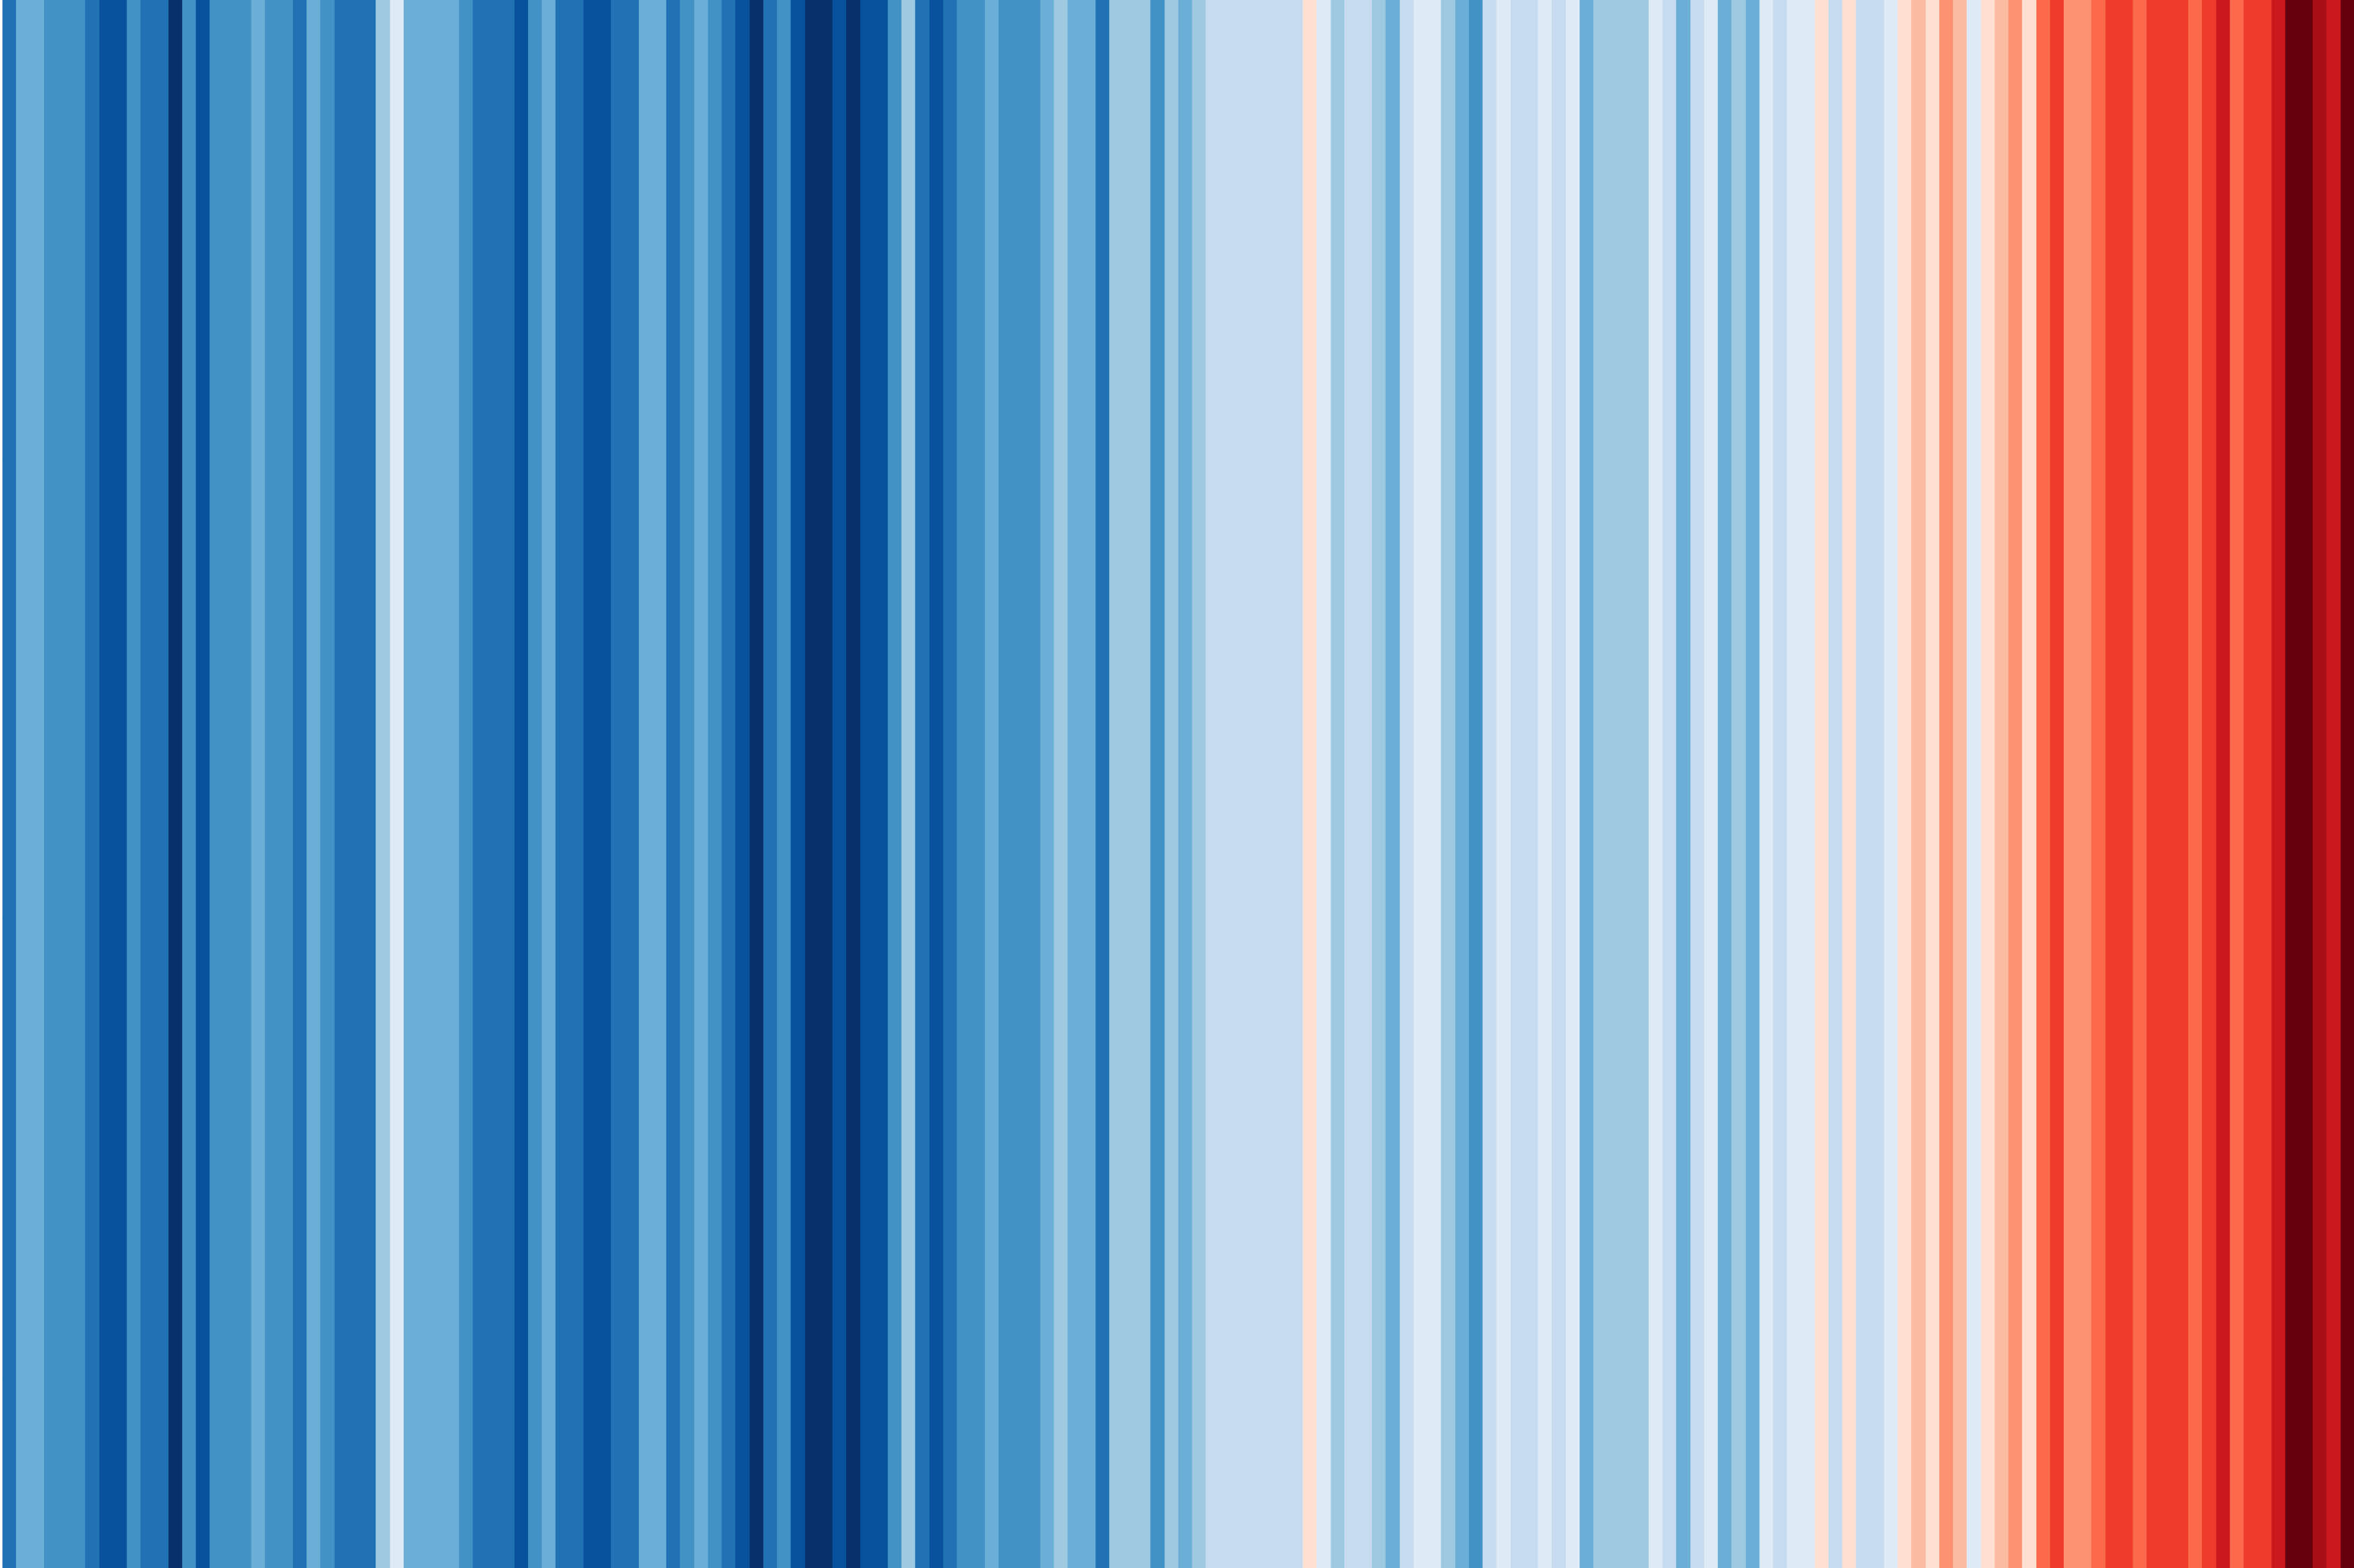 University climate stripes